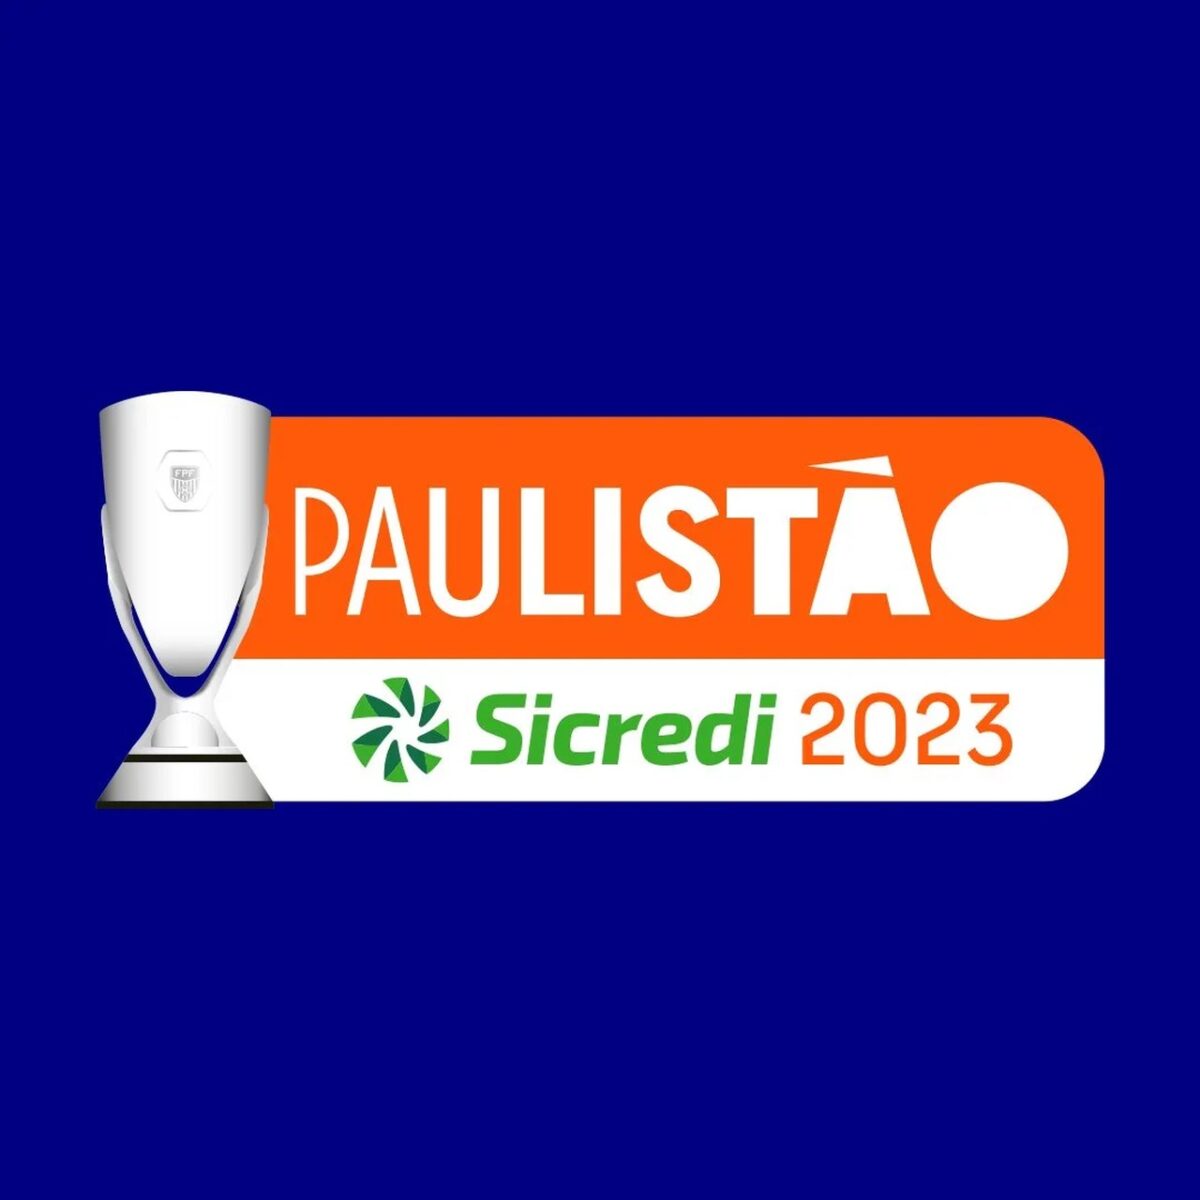 Com transmissão para todo o Brasil, Paulistão anuncia novidades para 2023